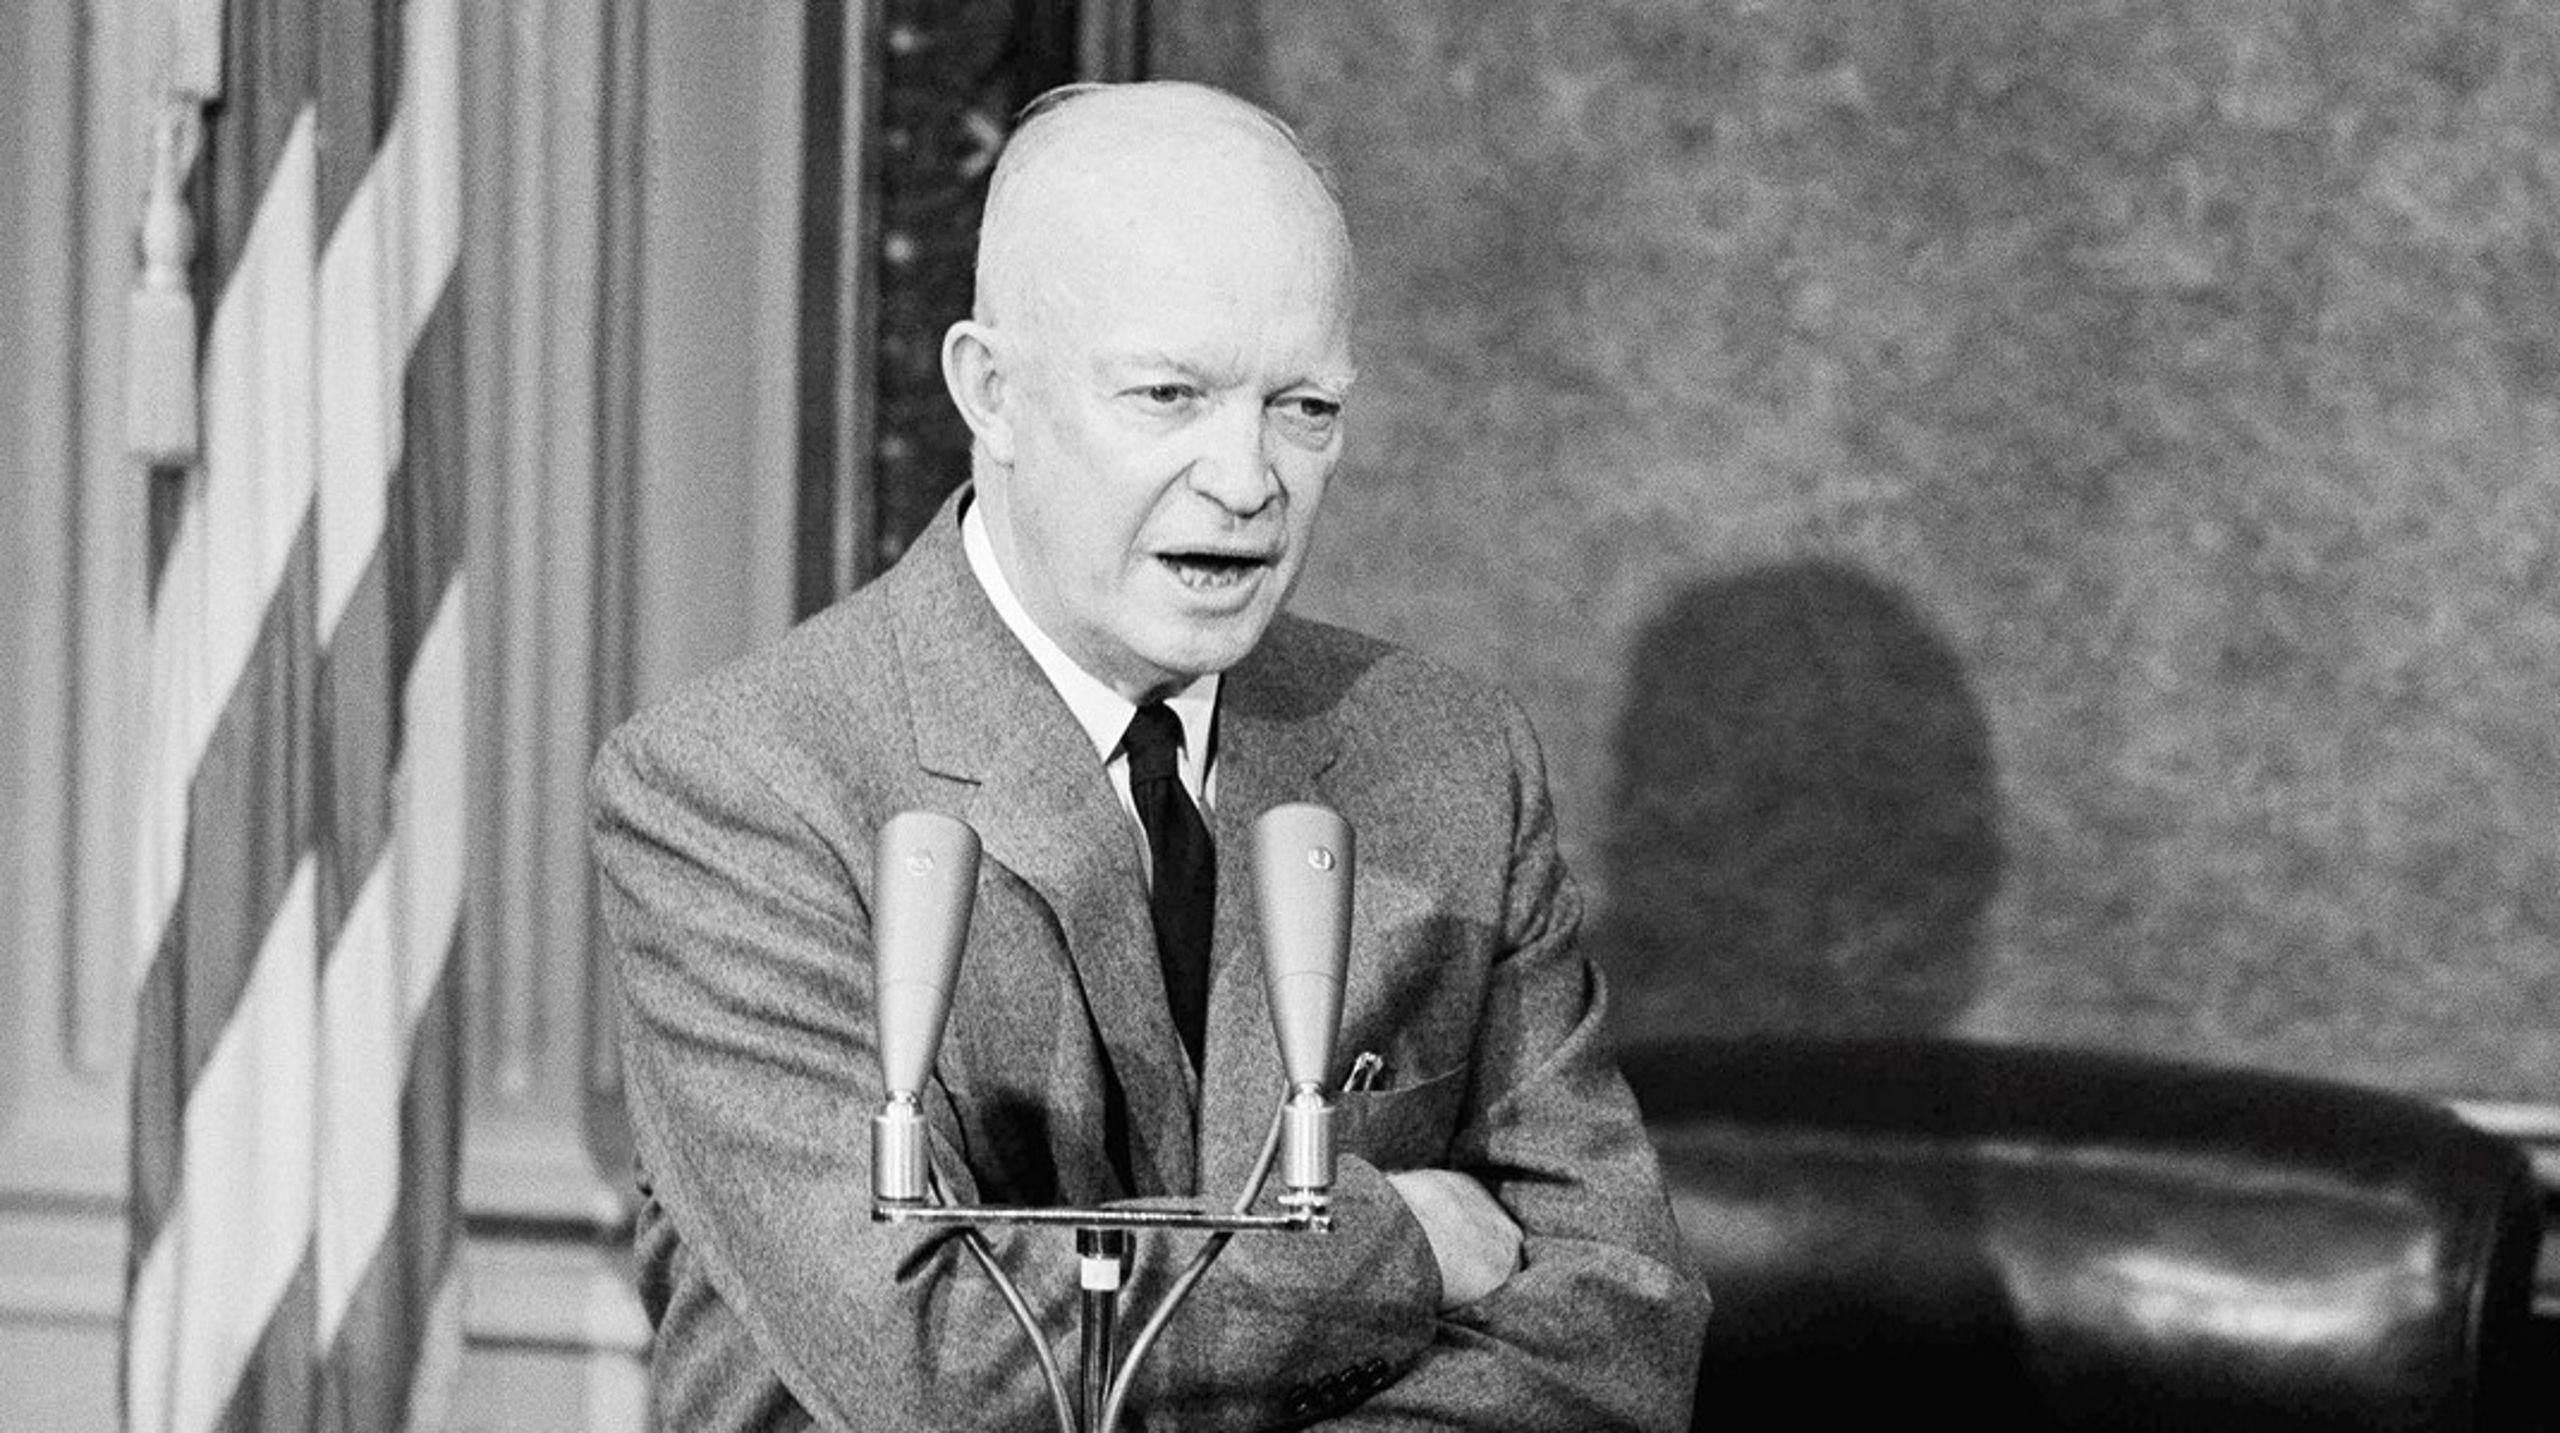 Det var Dwight D. Eisenhower - USAs præsident 1953-1961 - som i sin afskedstale i januar 1961 advarede mod det 'militær-industrielle kompleks' i USA, skriver&nbsp;Hans Mouritzen.